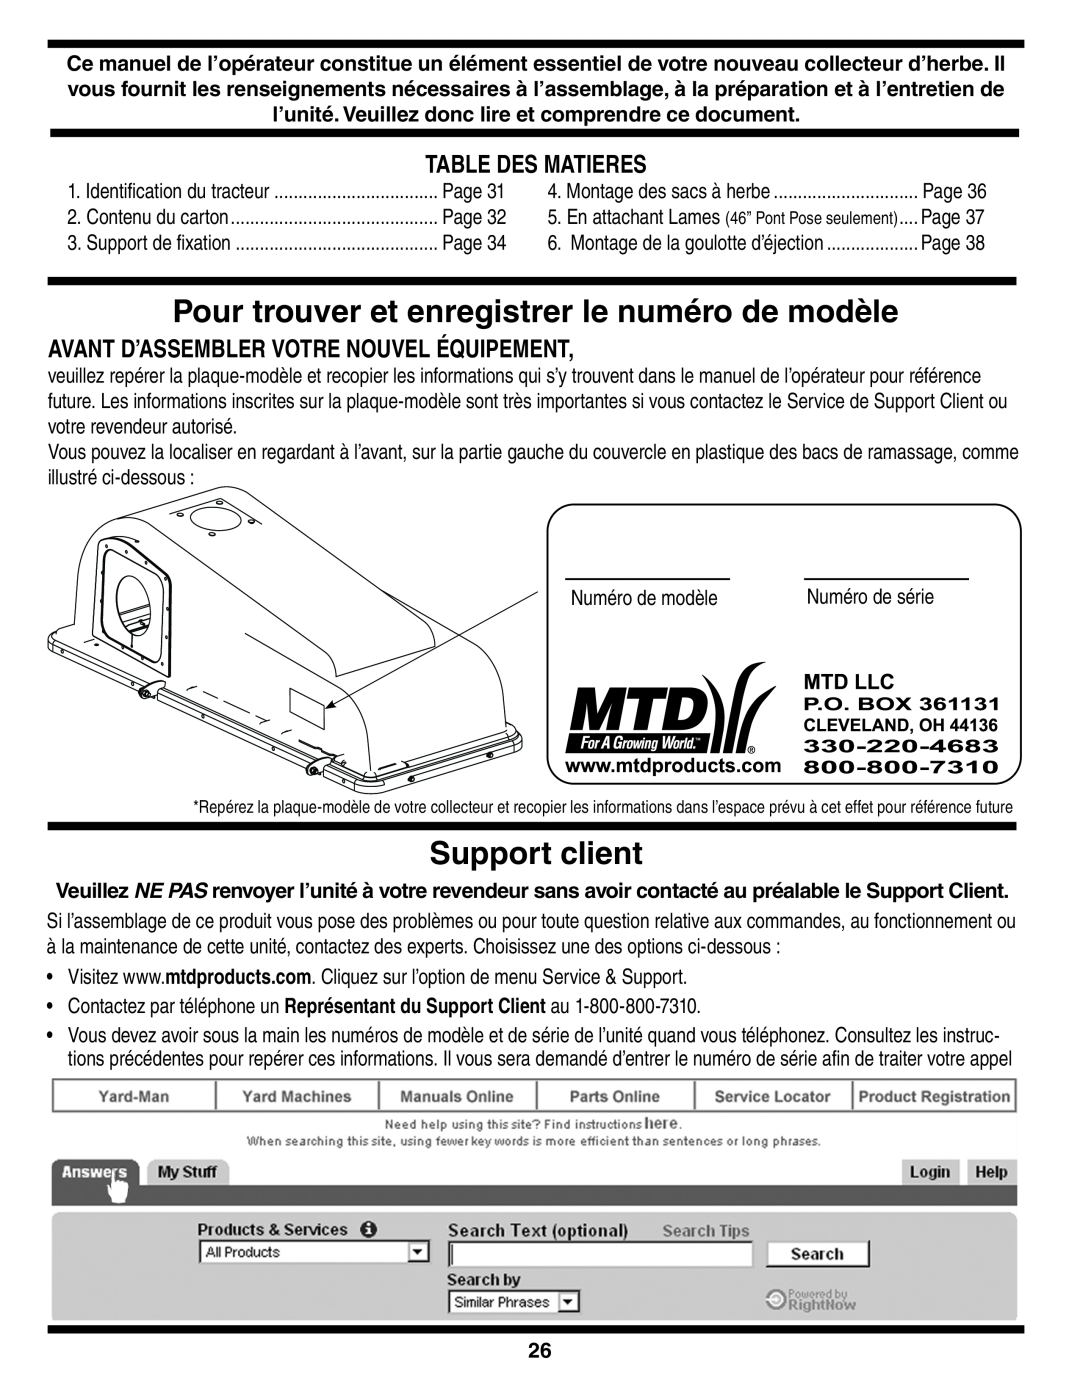 MTD 190-182,190-180 warranty Pour trouver et enregistrer le numéro de modèle, Support client, Table Des Matieres 